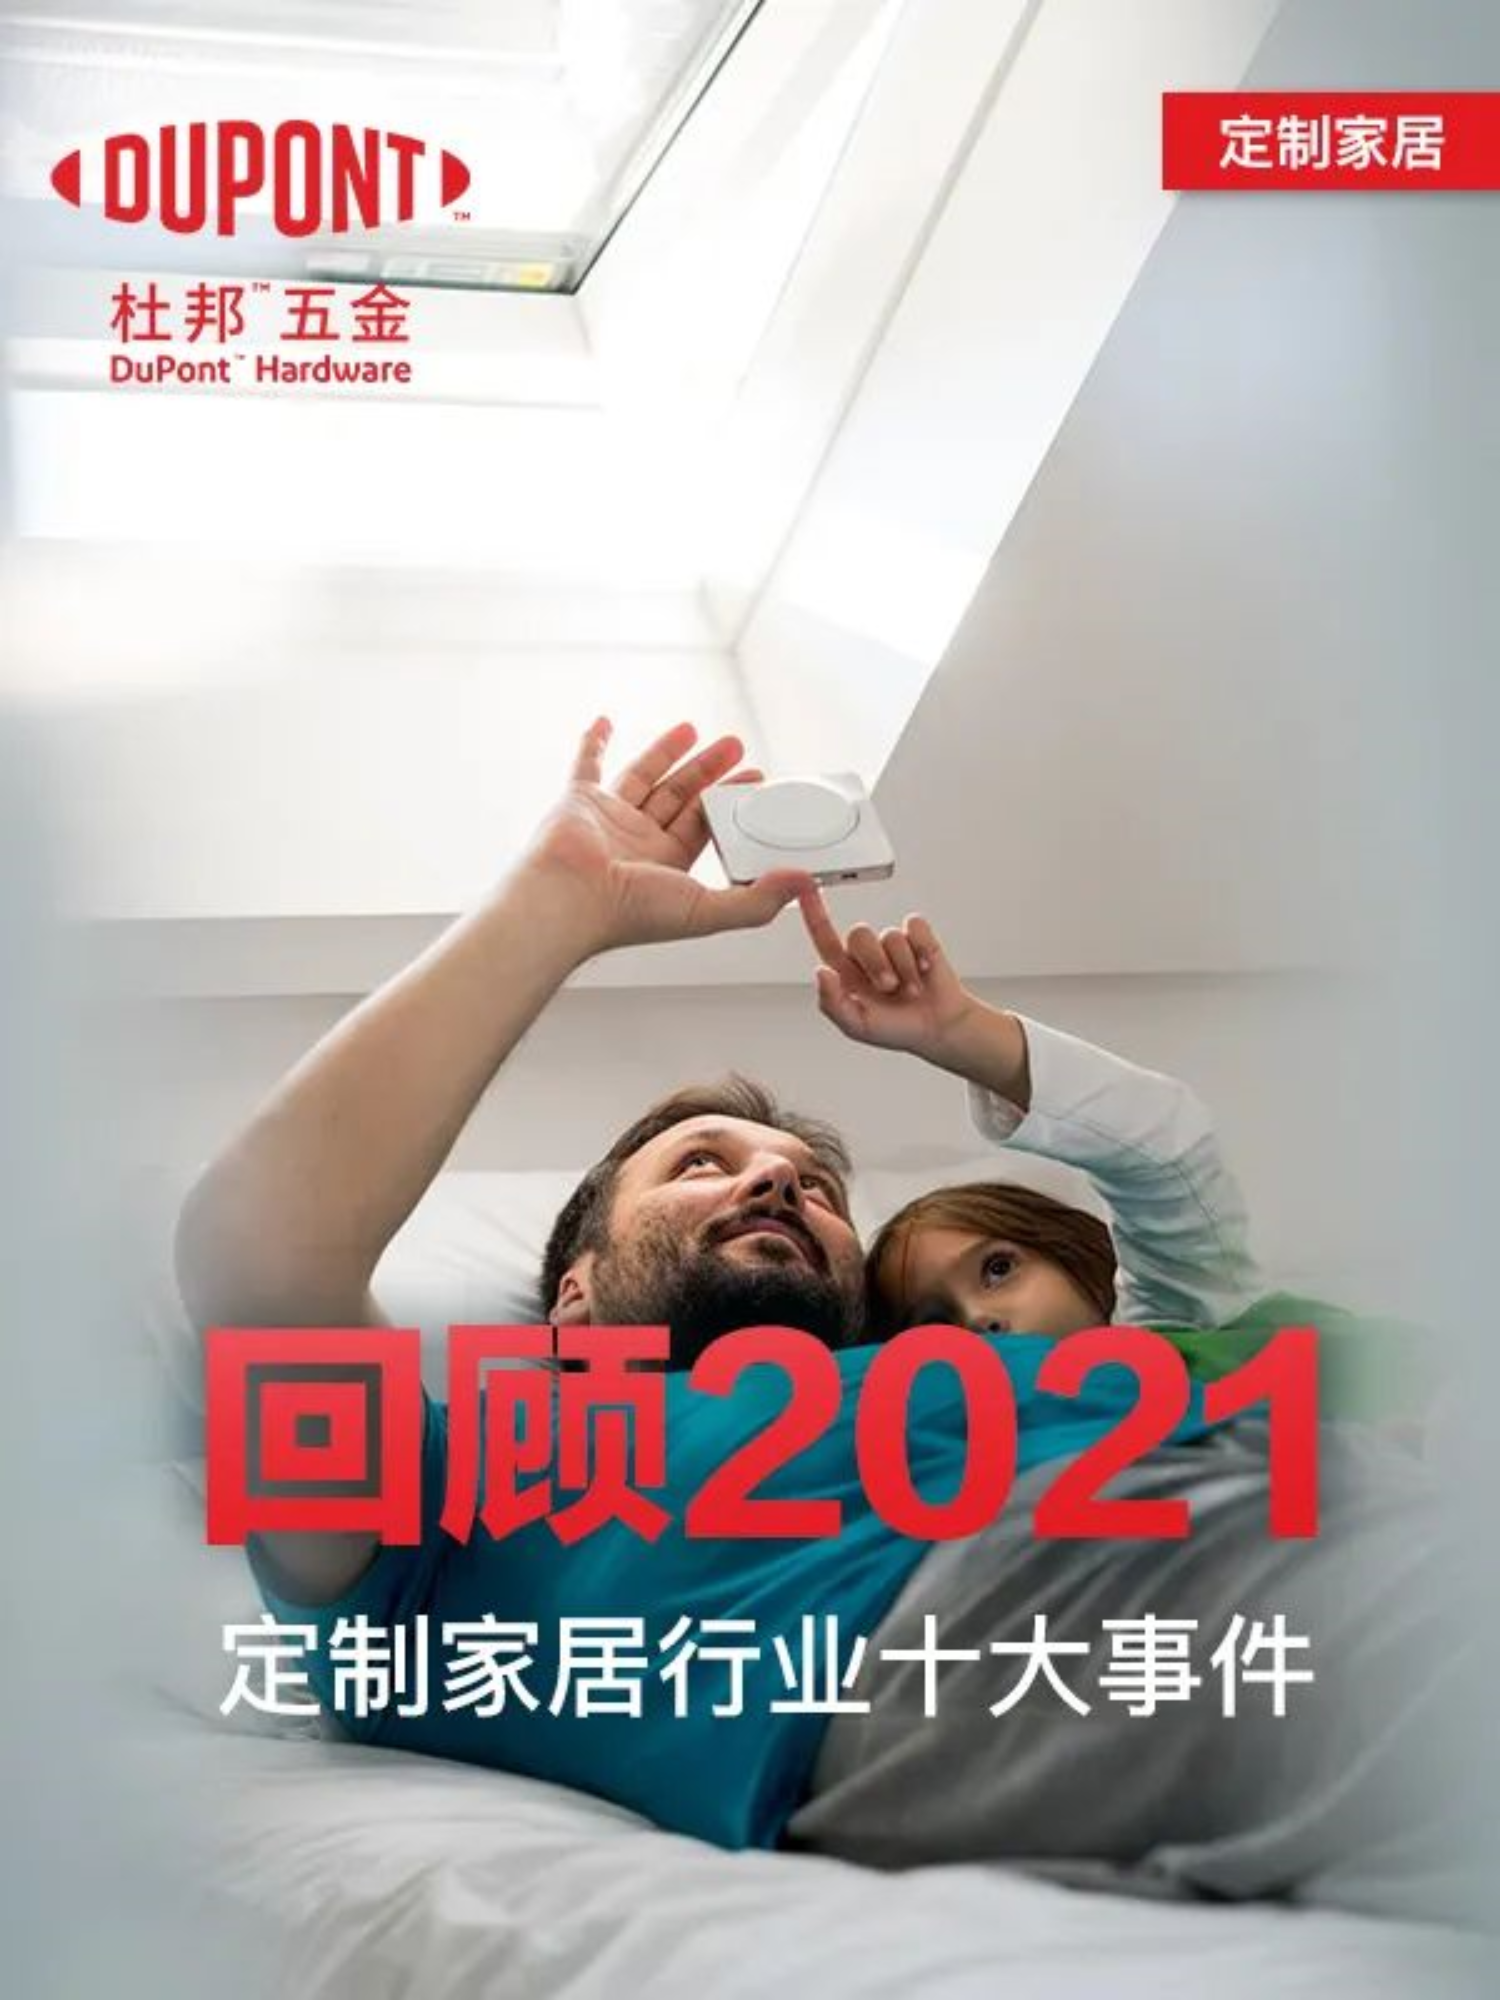 Przegląd 10 najlepszych niestandardowych elementów wyposażenia domu w Chinach w 2021 r.!